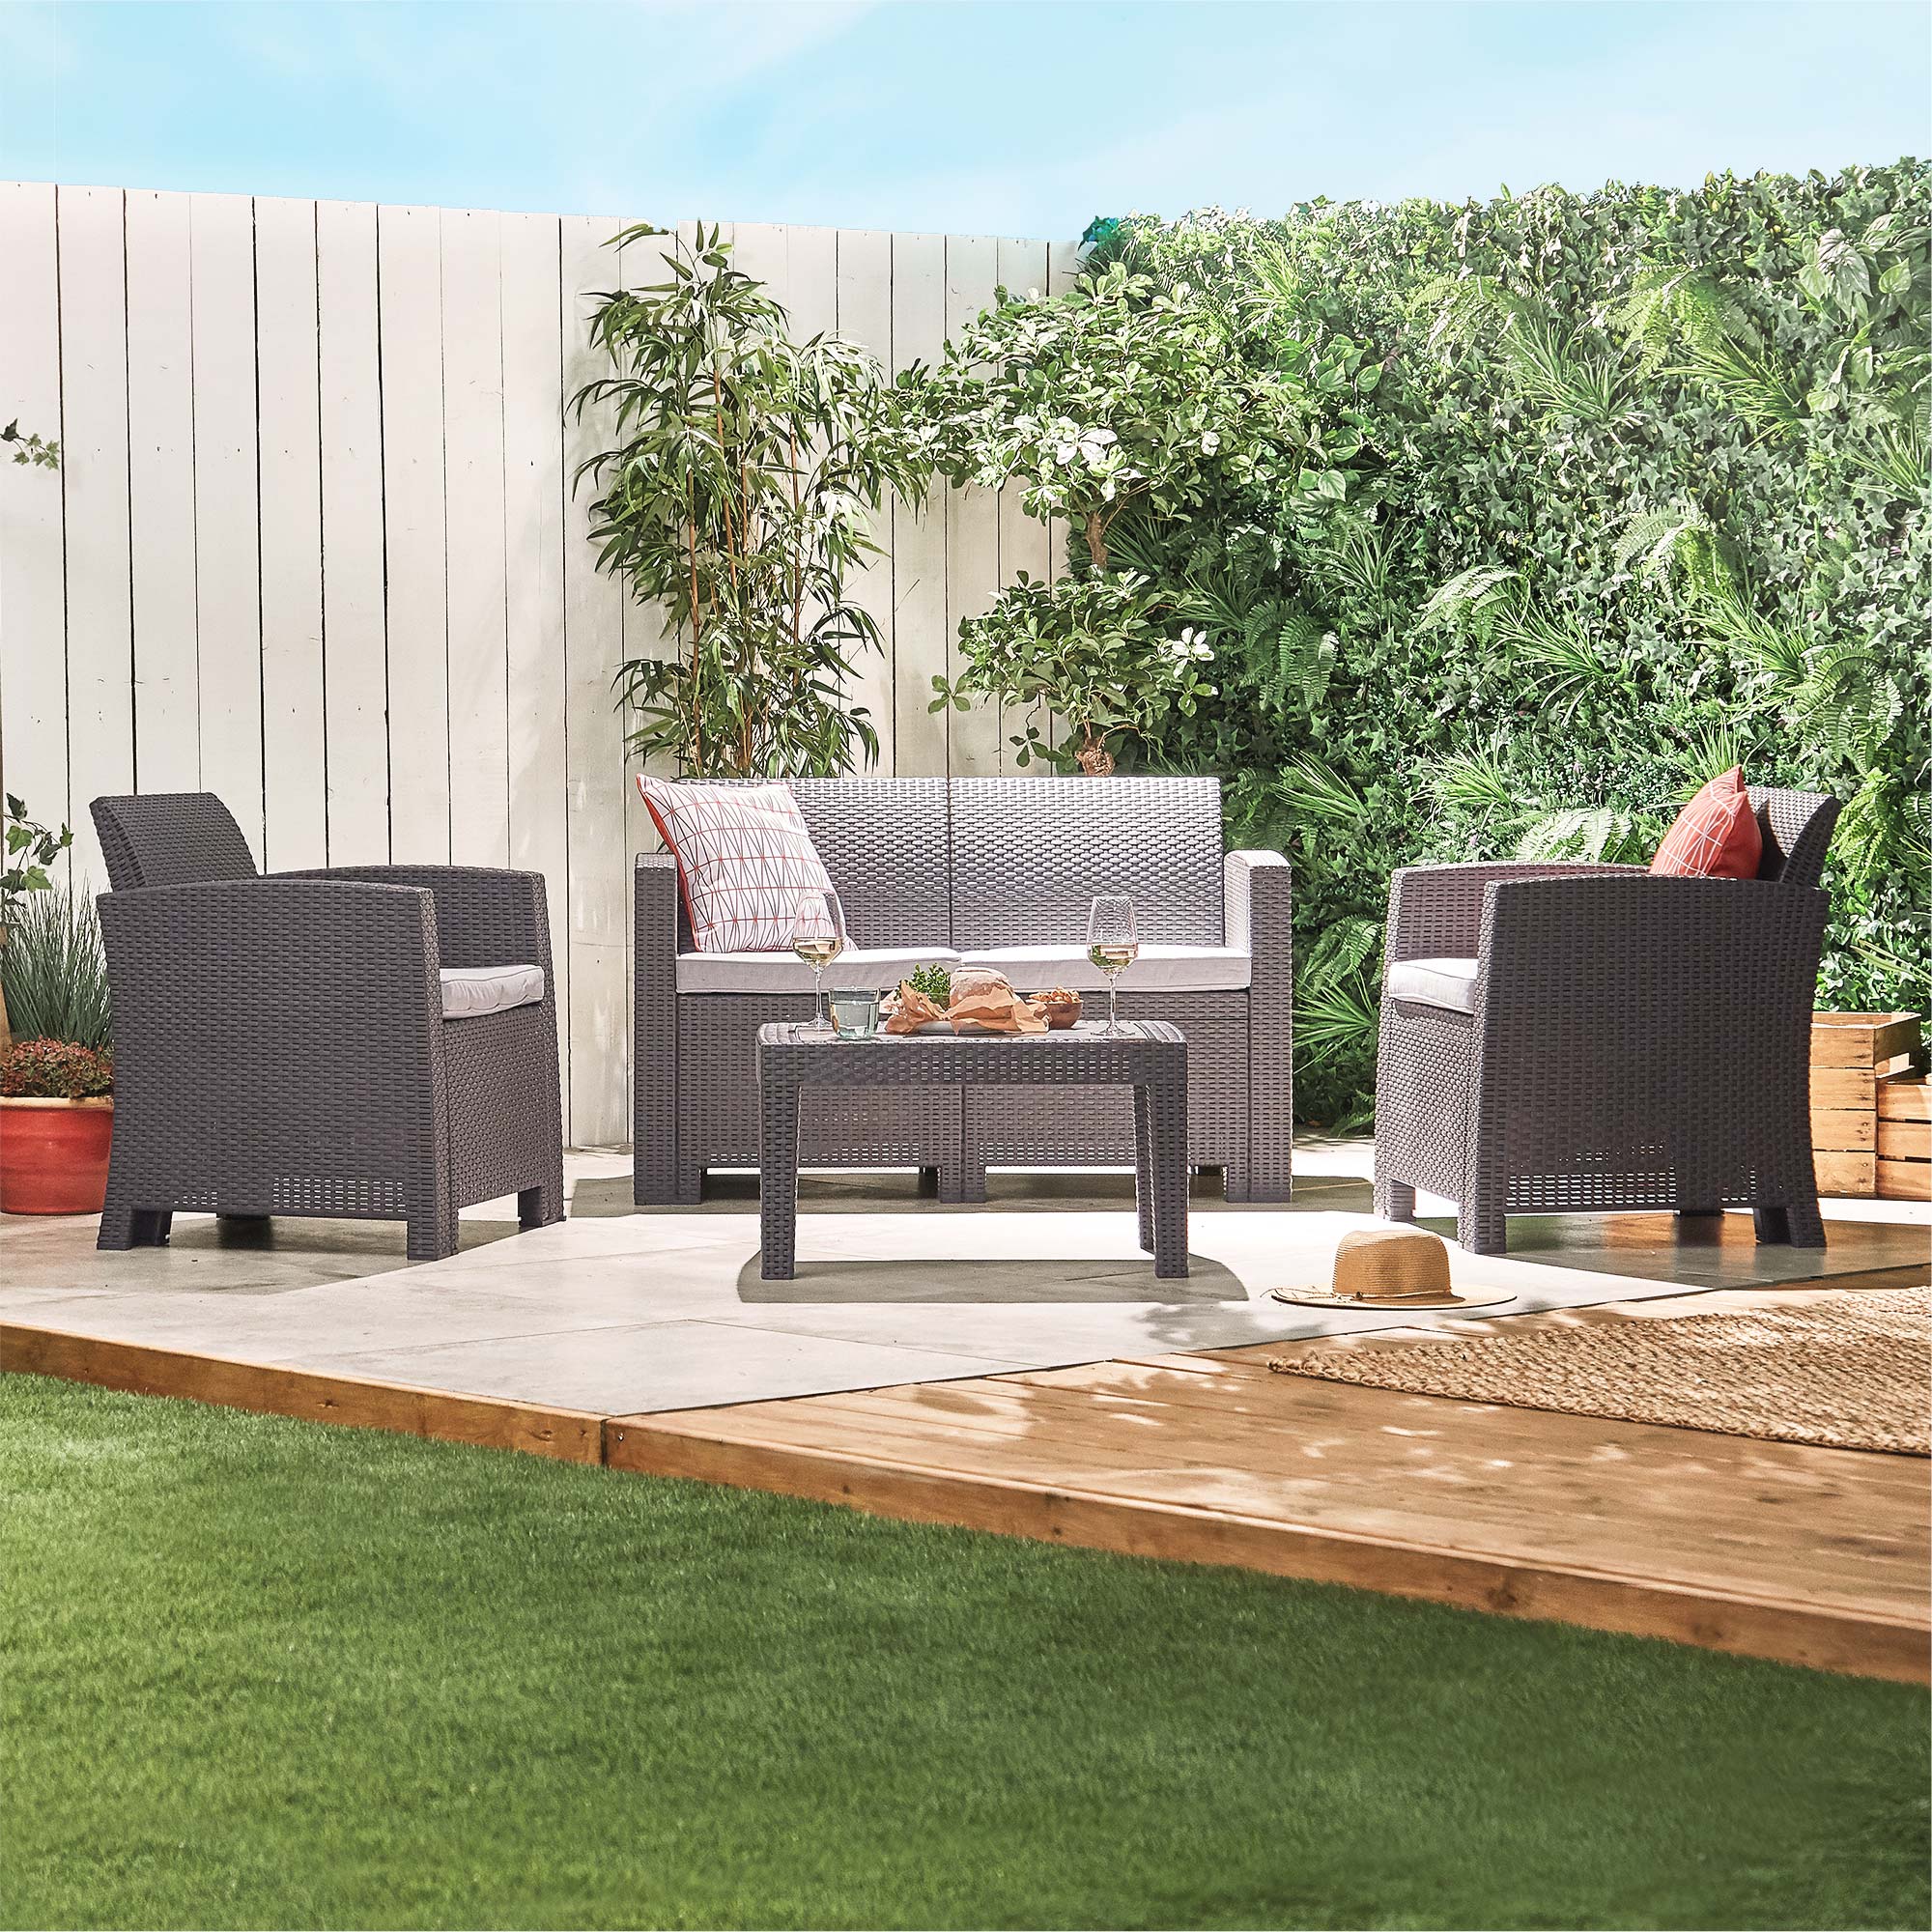 VonHaus Rattan Garden Furniture Set - 4 Seater Outdoor Sofa Set